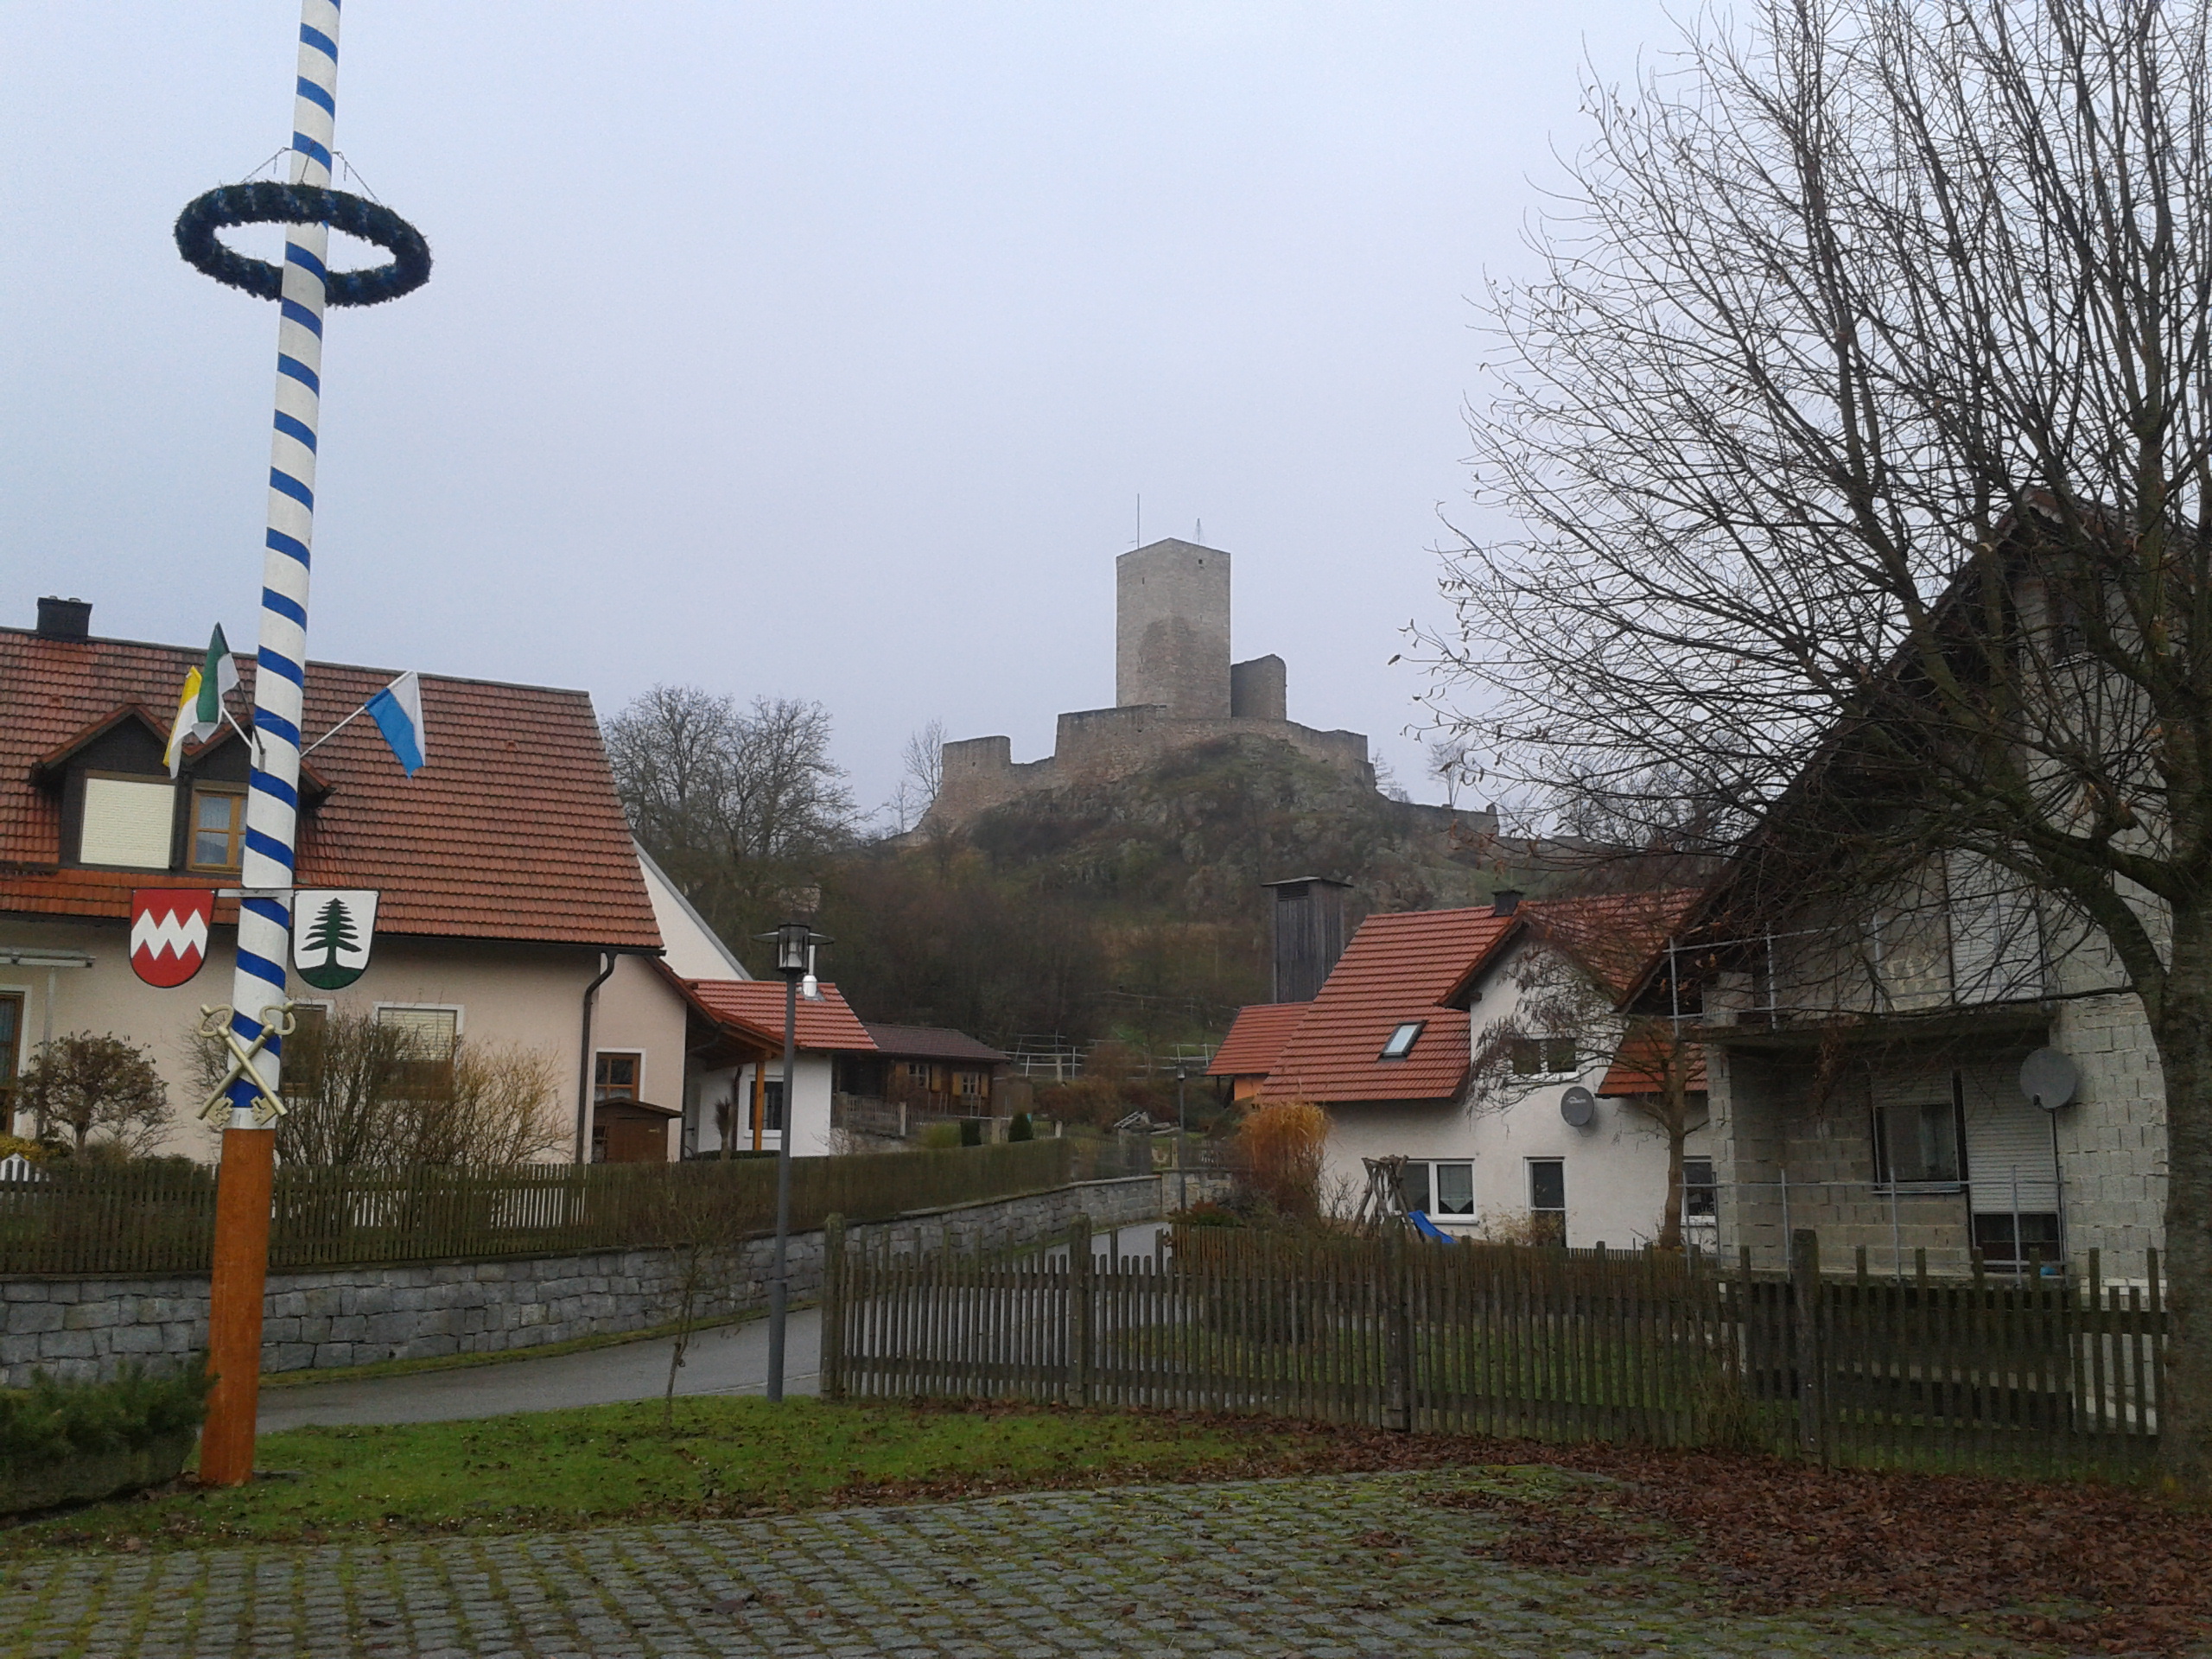 Burgruine Leuchtenberg